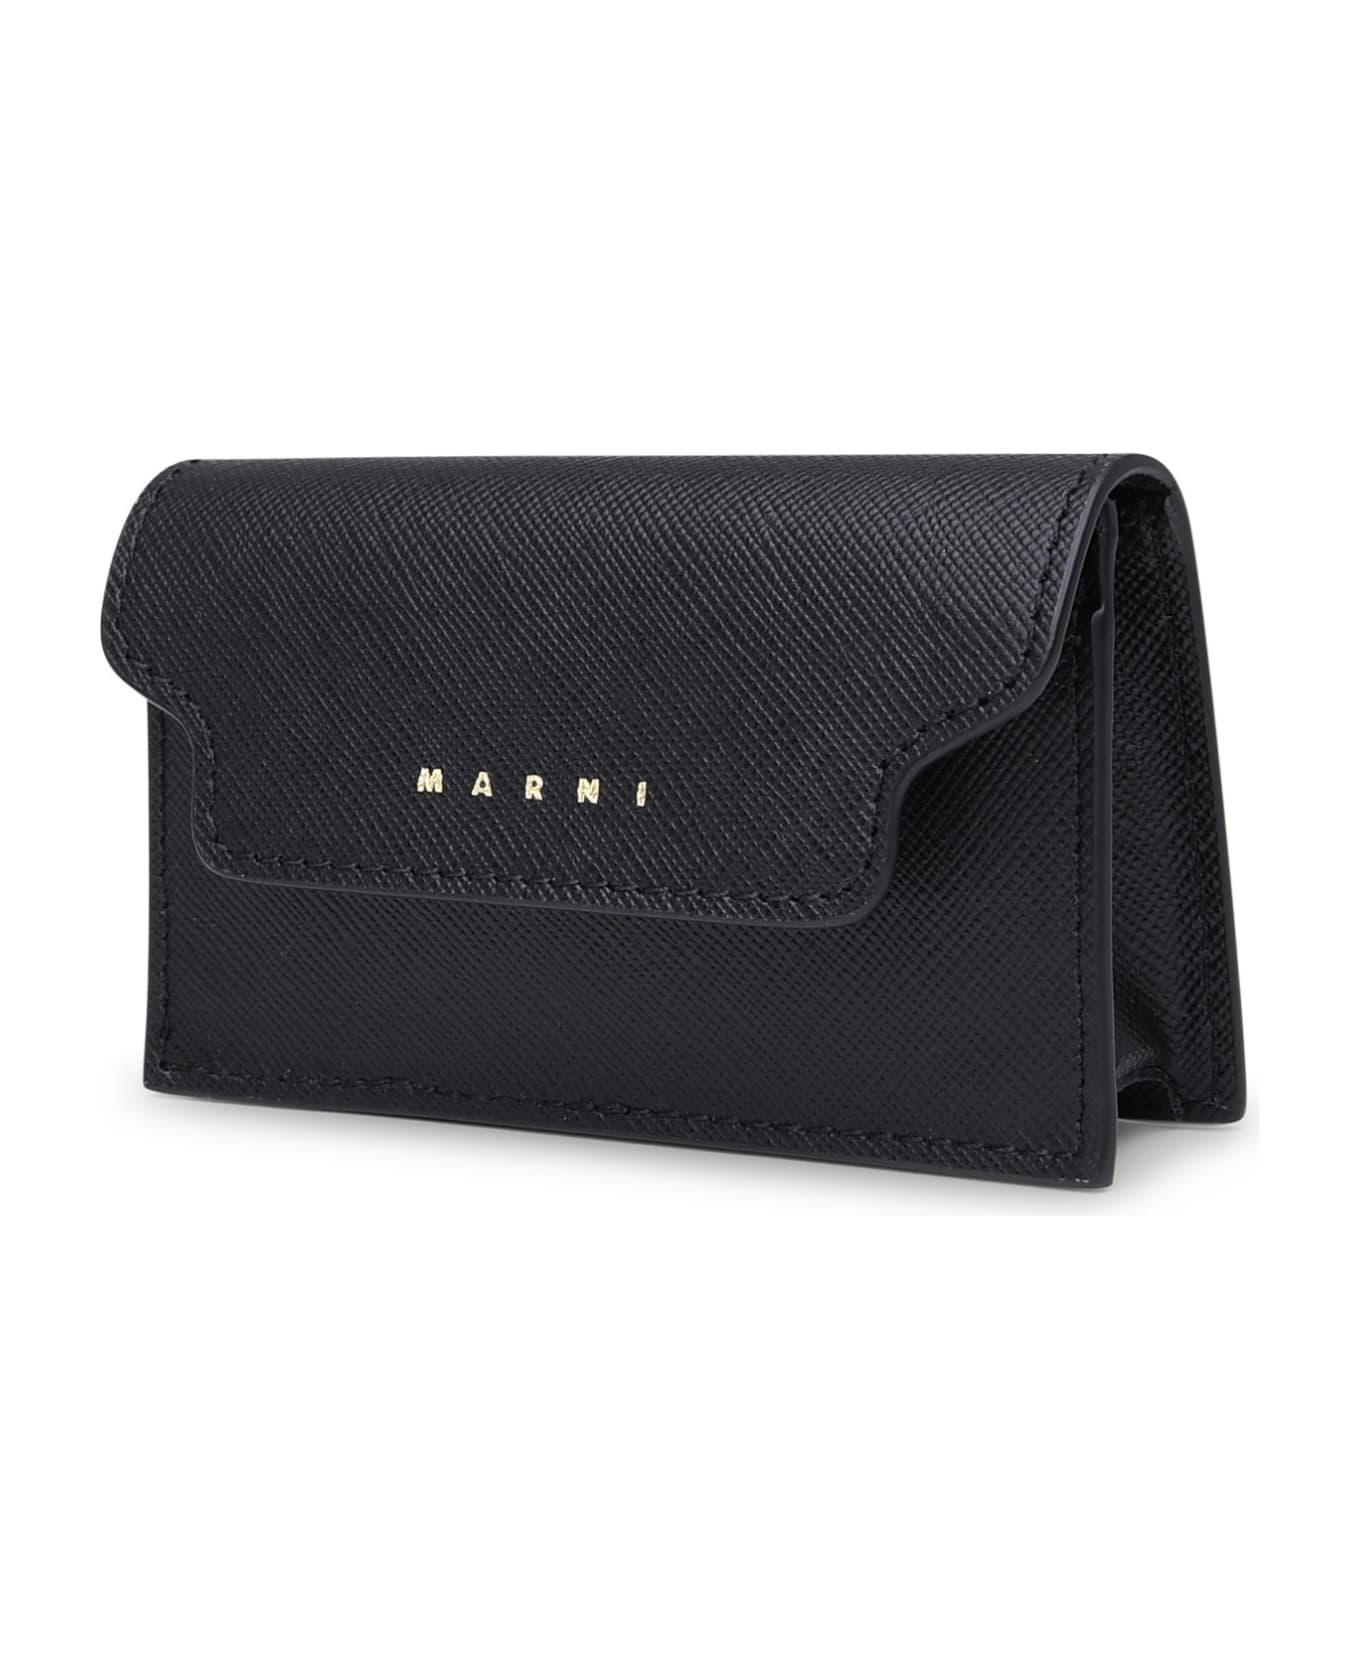 Marni Black Leather Cardholder - BLACK